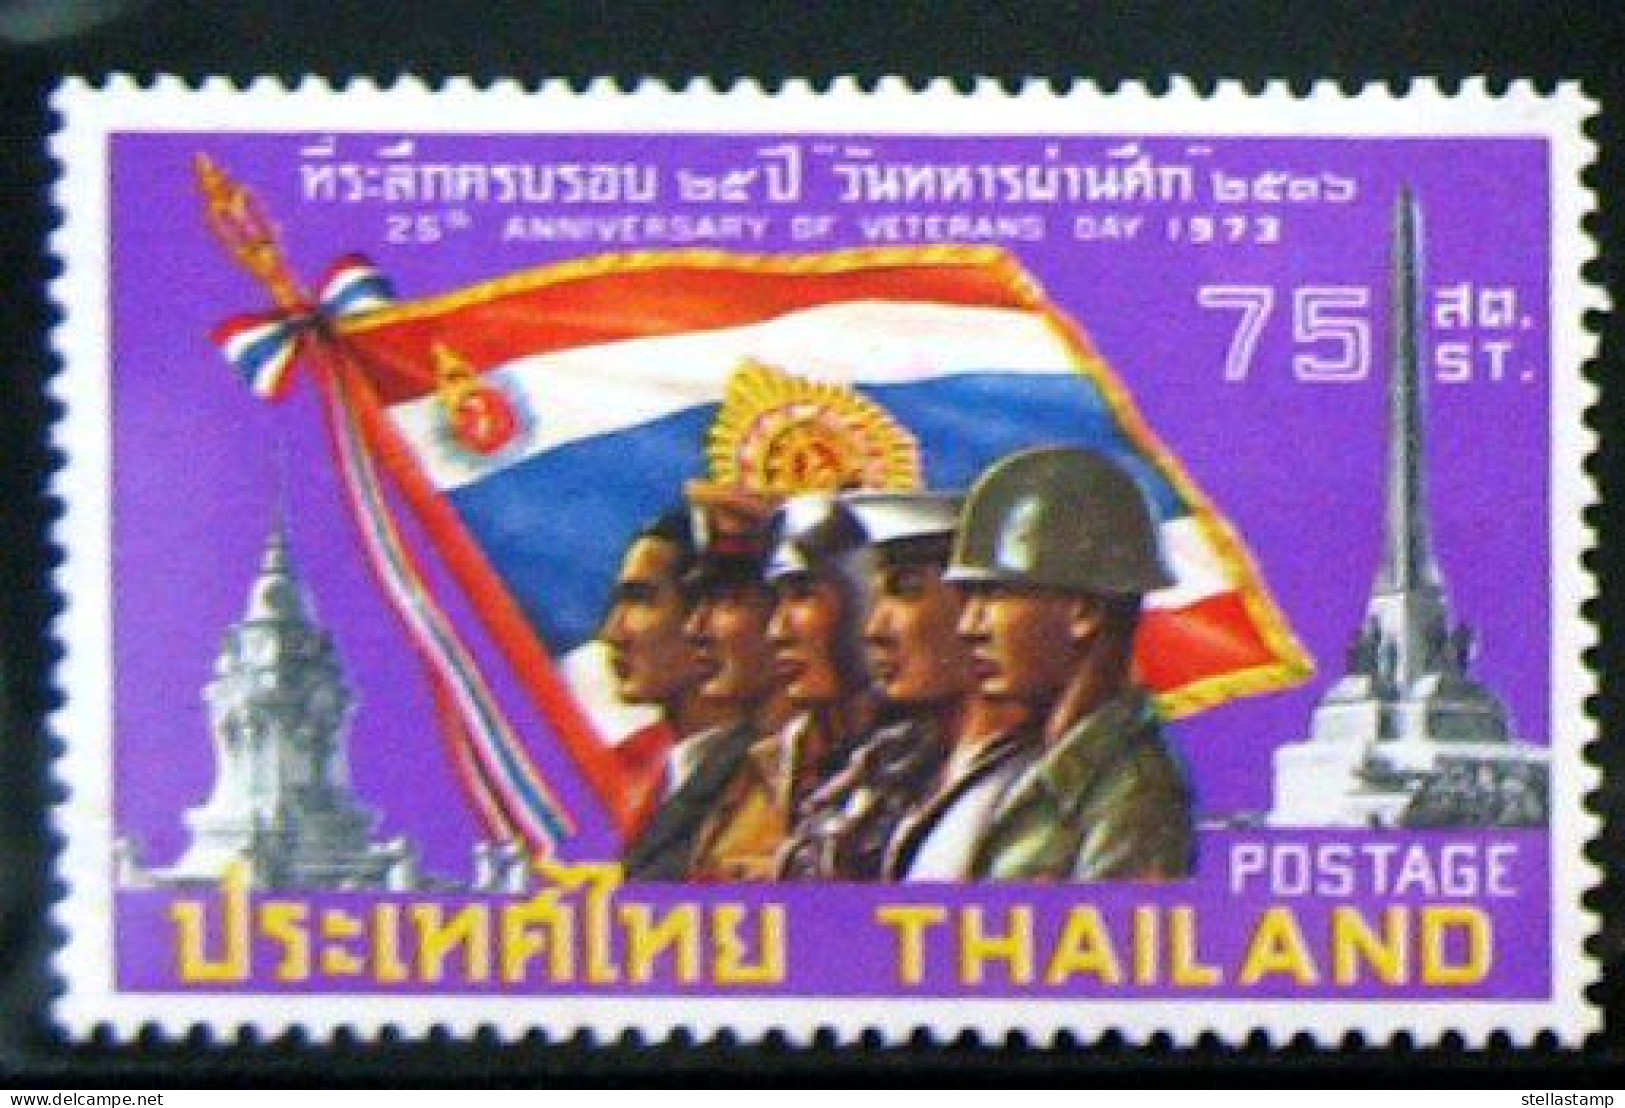 Thailand Stamp 1973 25th Ann Of Veterans Day - Thailand